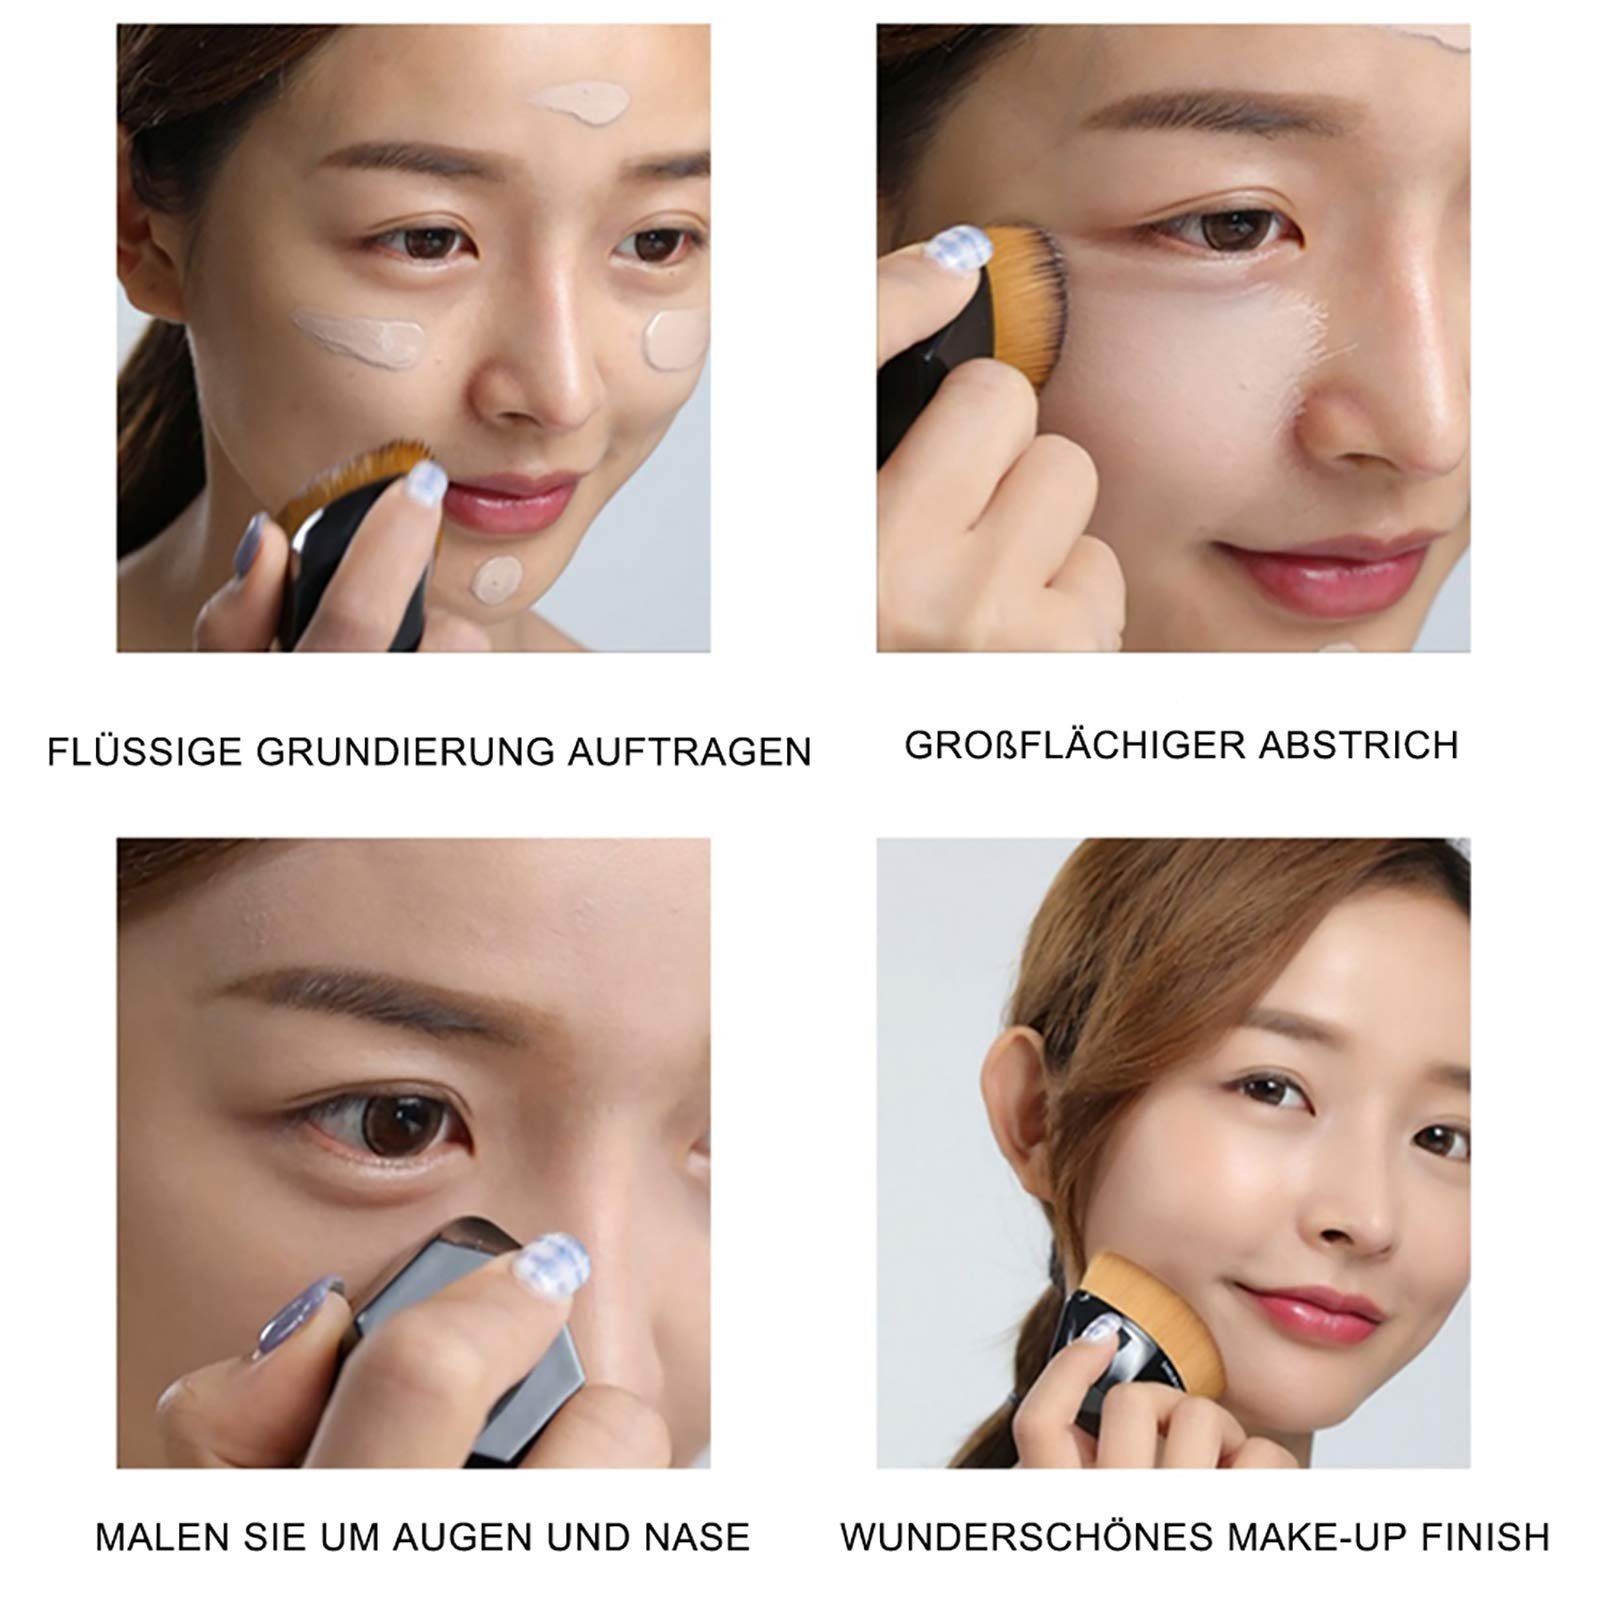 Haiaveng Make-up Premium Blush Flat von Make-up Pinsel Groove Flüssigkeit, Design, Mischen Gesicht Foundation Concealer Pinsel Pinsel zum Pinsel Top Stick Creme